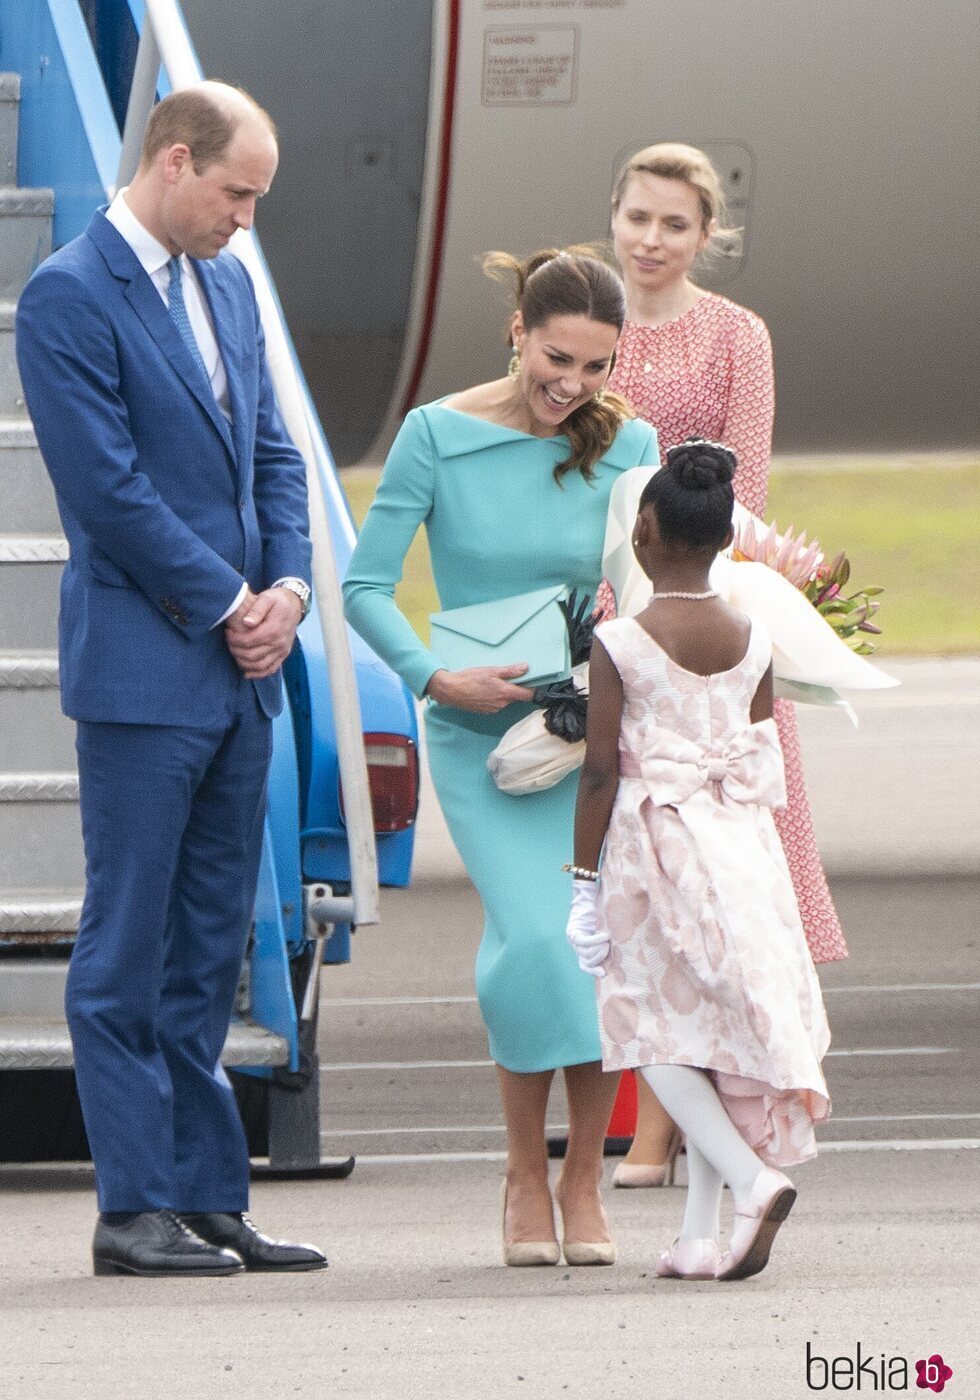 Una niña hace la reverencia al Príncipe Guillermo y Kate Middleton a su llegada a Las Bahamas